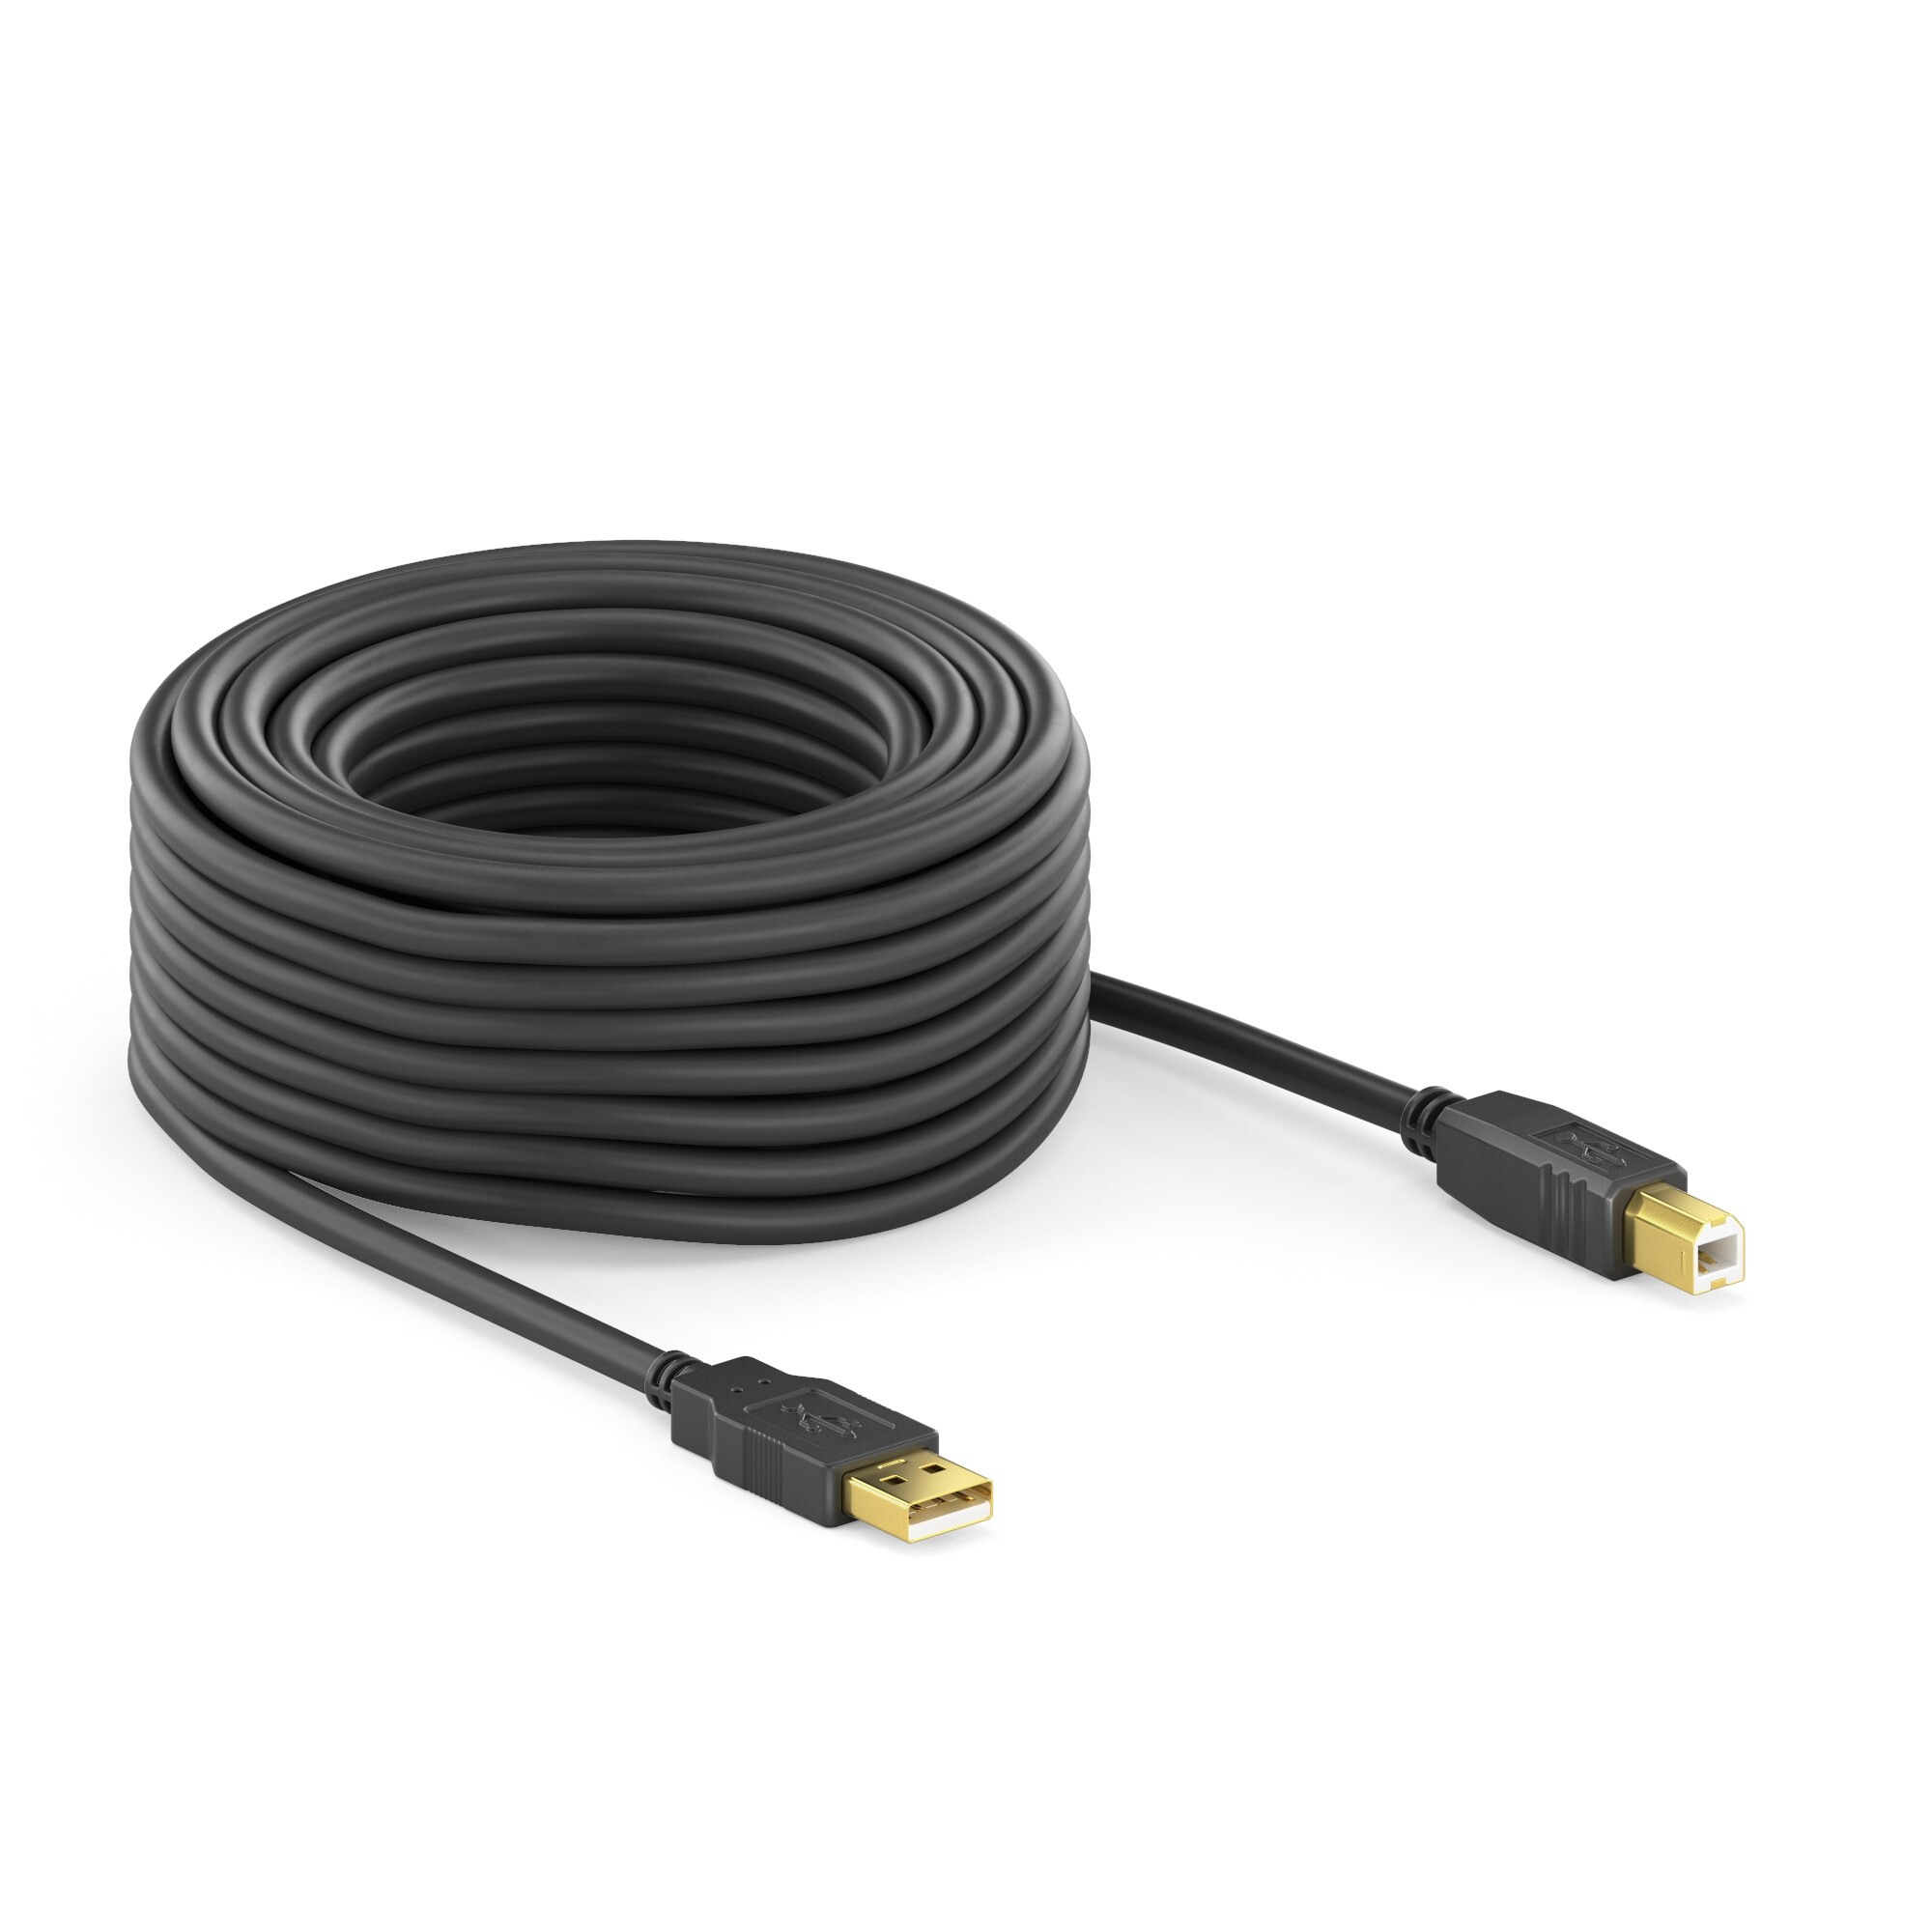 PureLink-DS2000-050-USB-2-0-Aktiv-Kabel-schwarz-5m